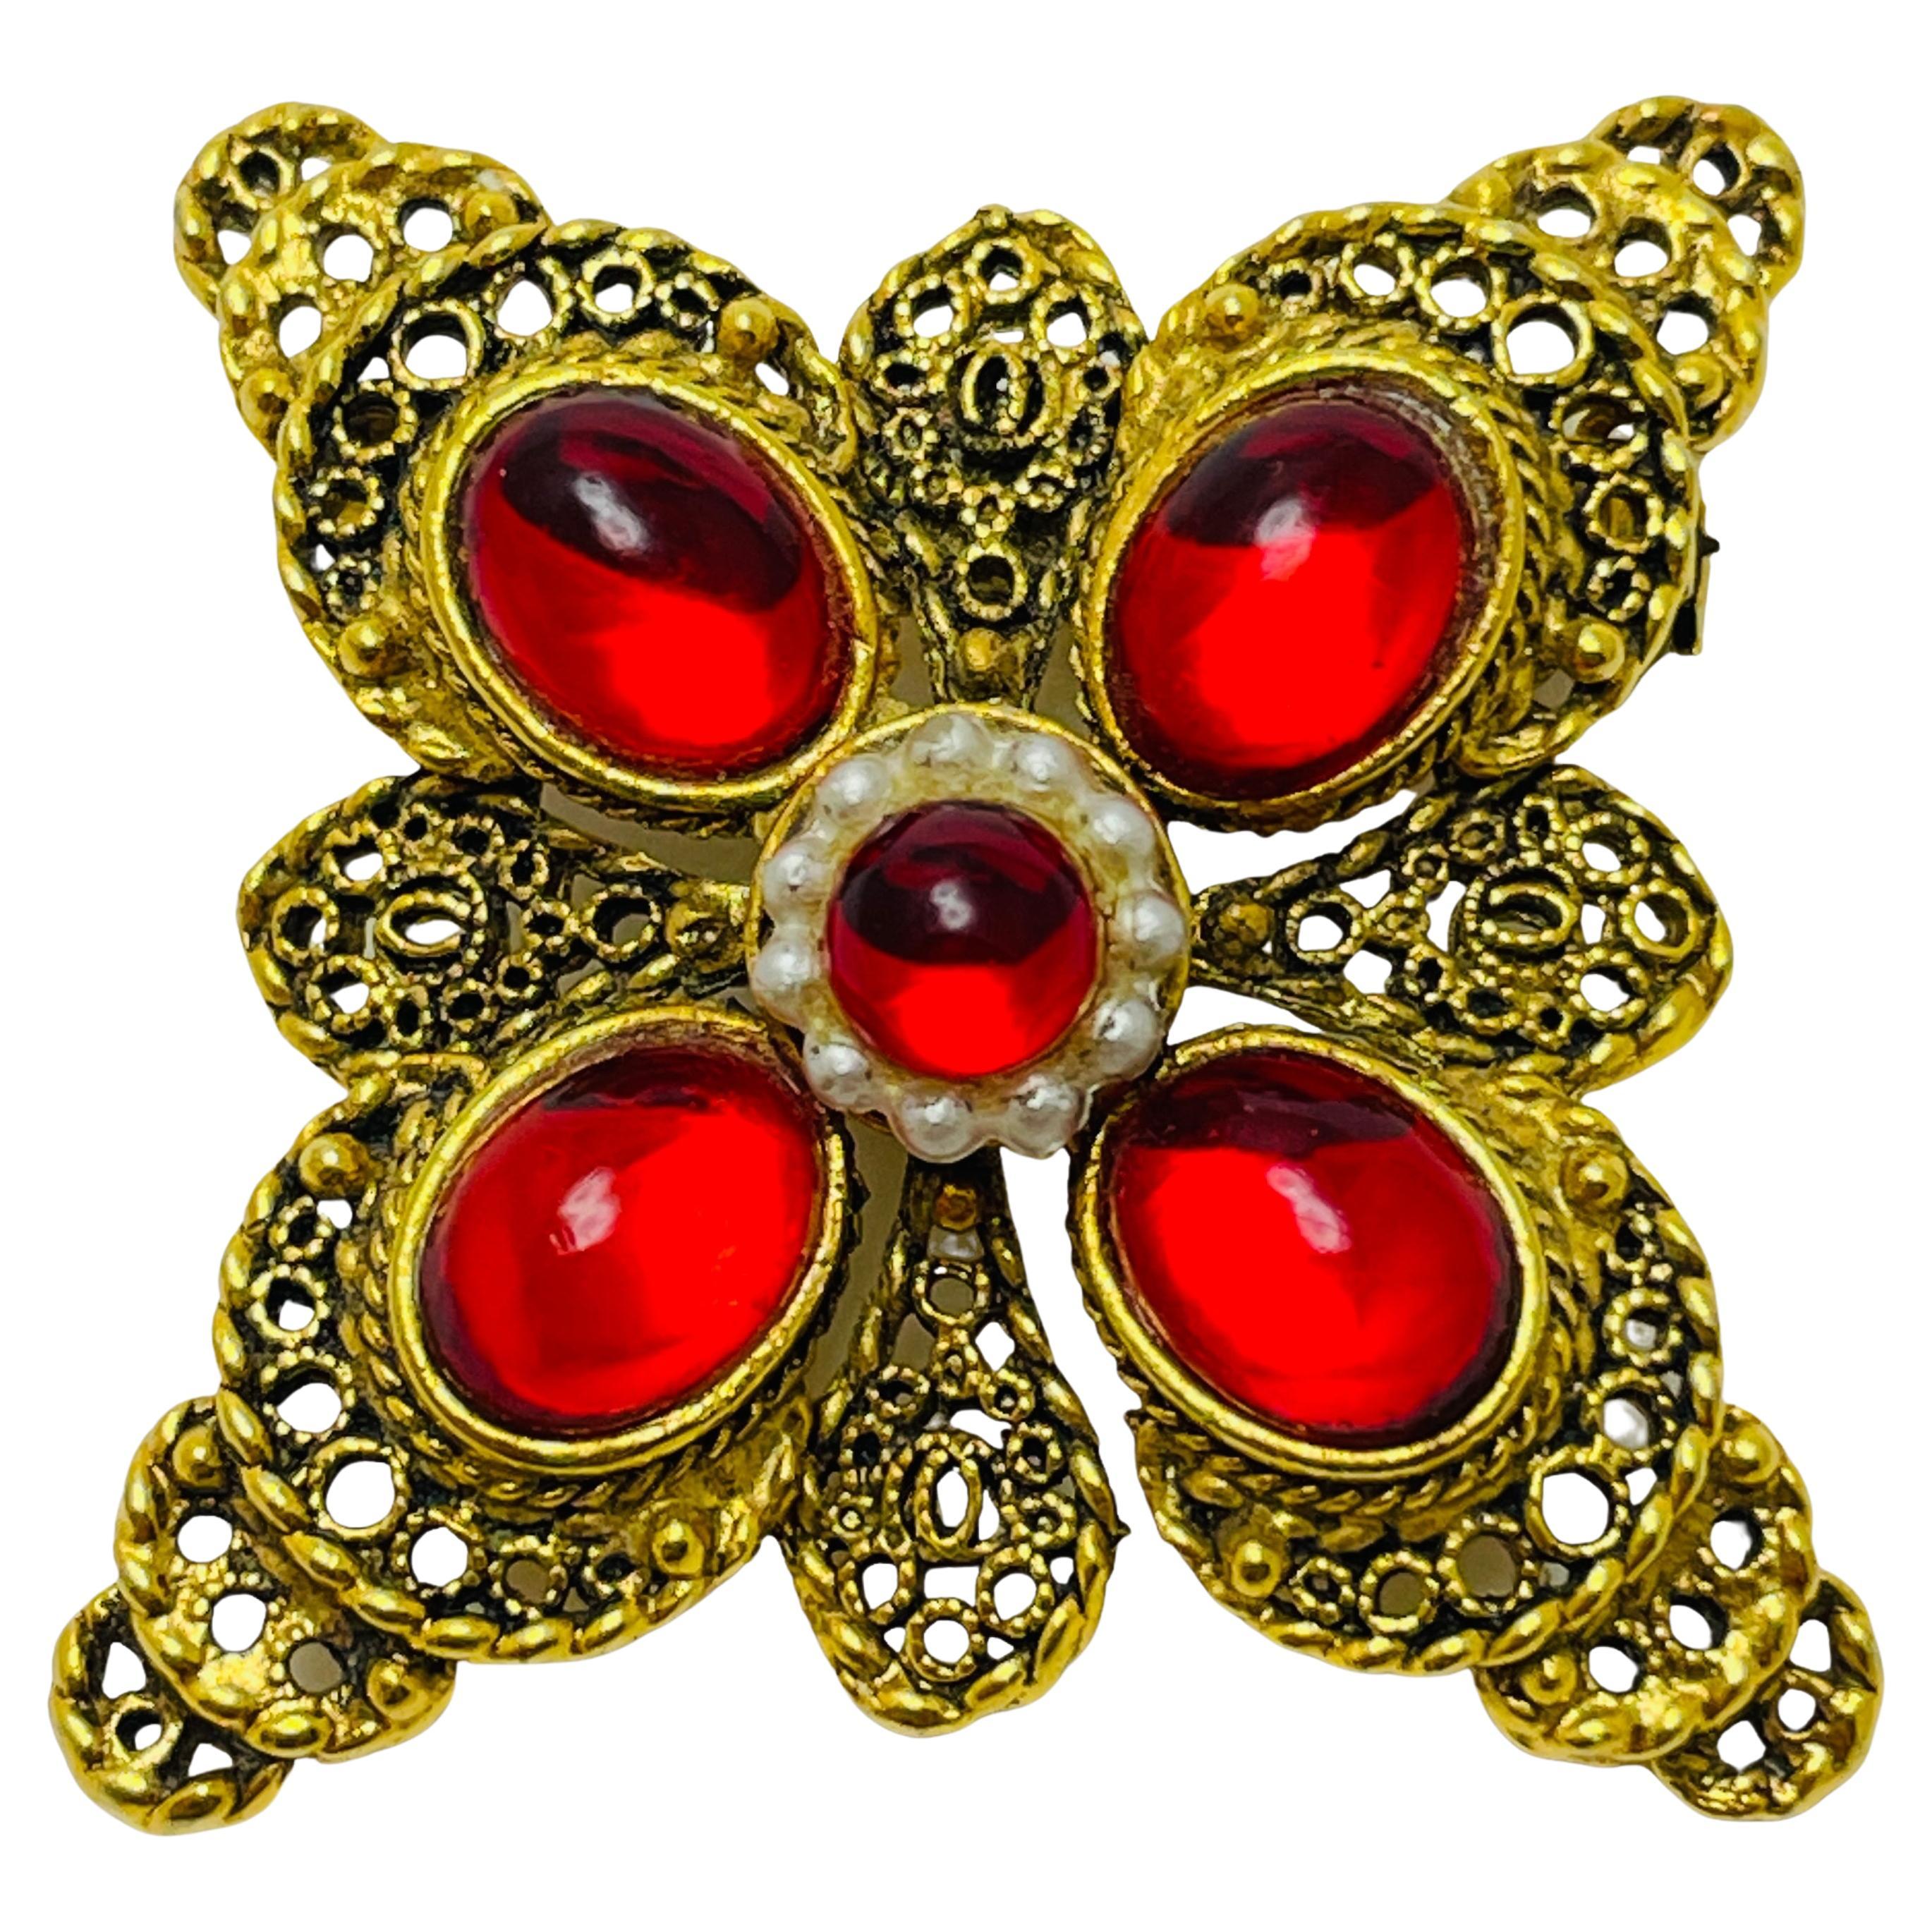 Vintage gold red cabs Maltese cross designer brooch